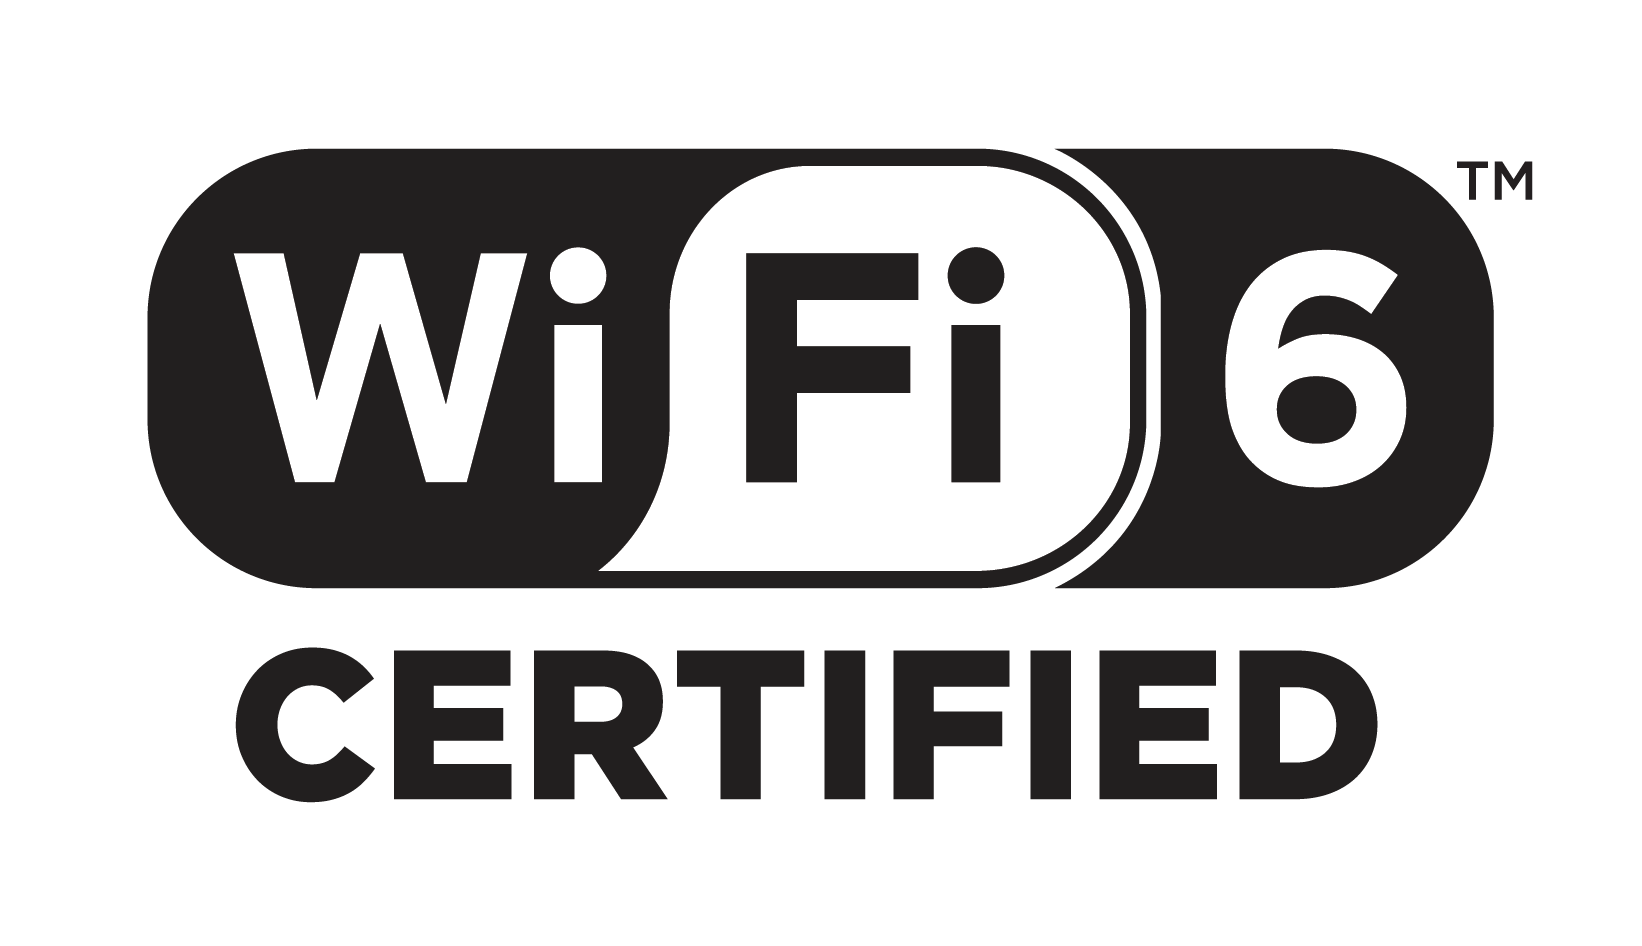 Program sertifikasi Wi-Fi 6 dimulai saat Wi-Fi lebih cepat dalam perjalanan